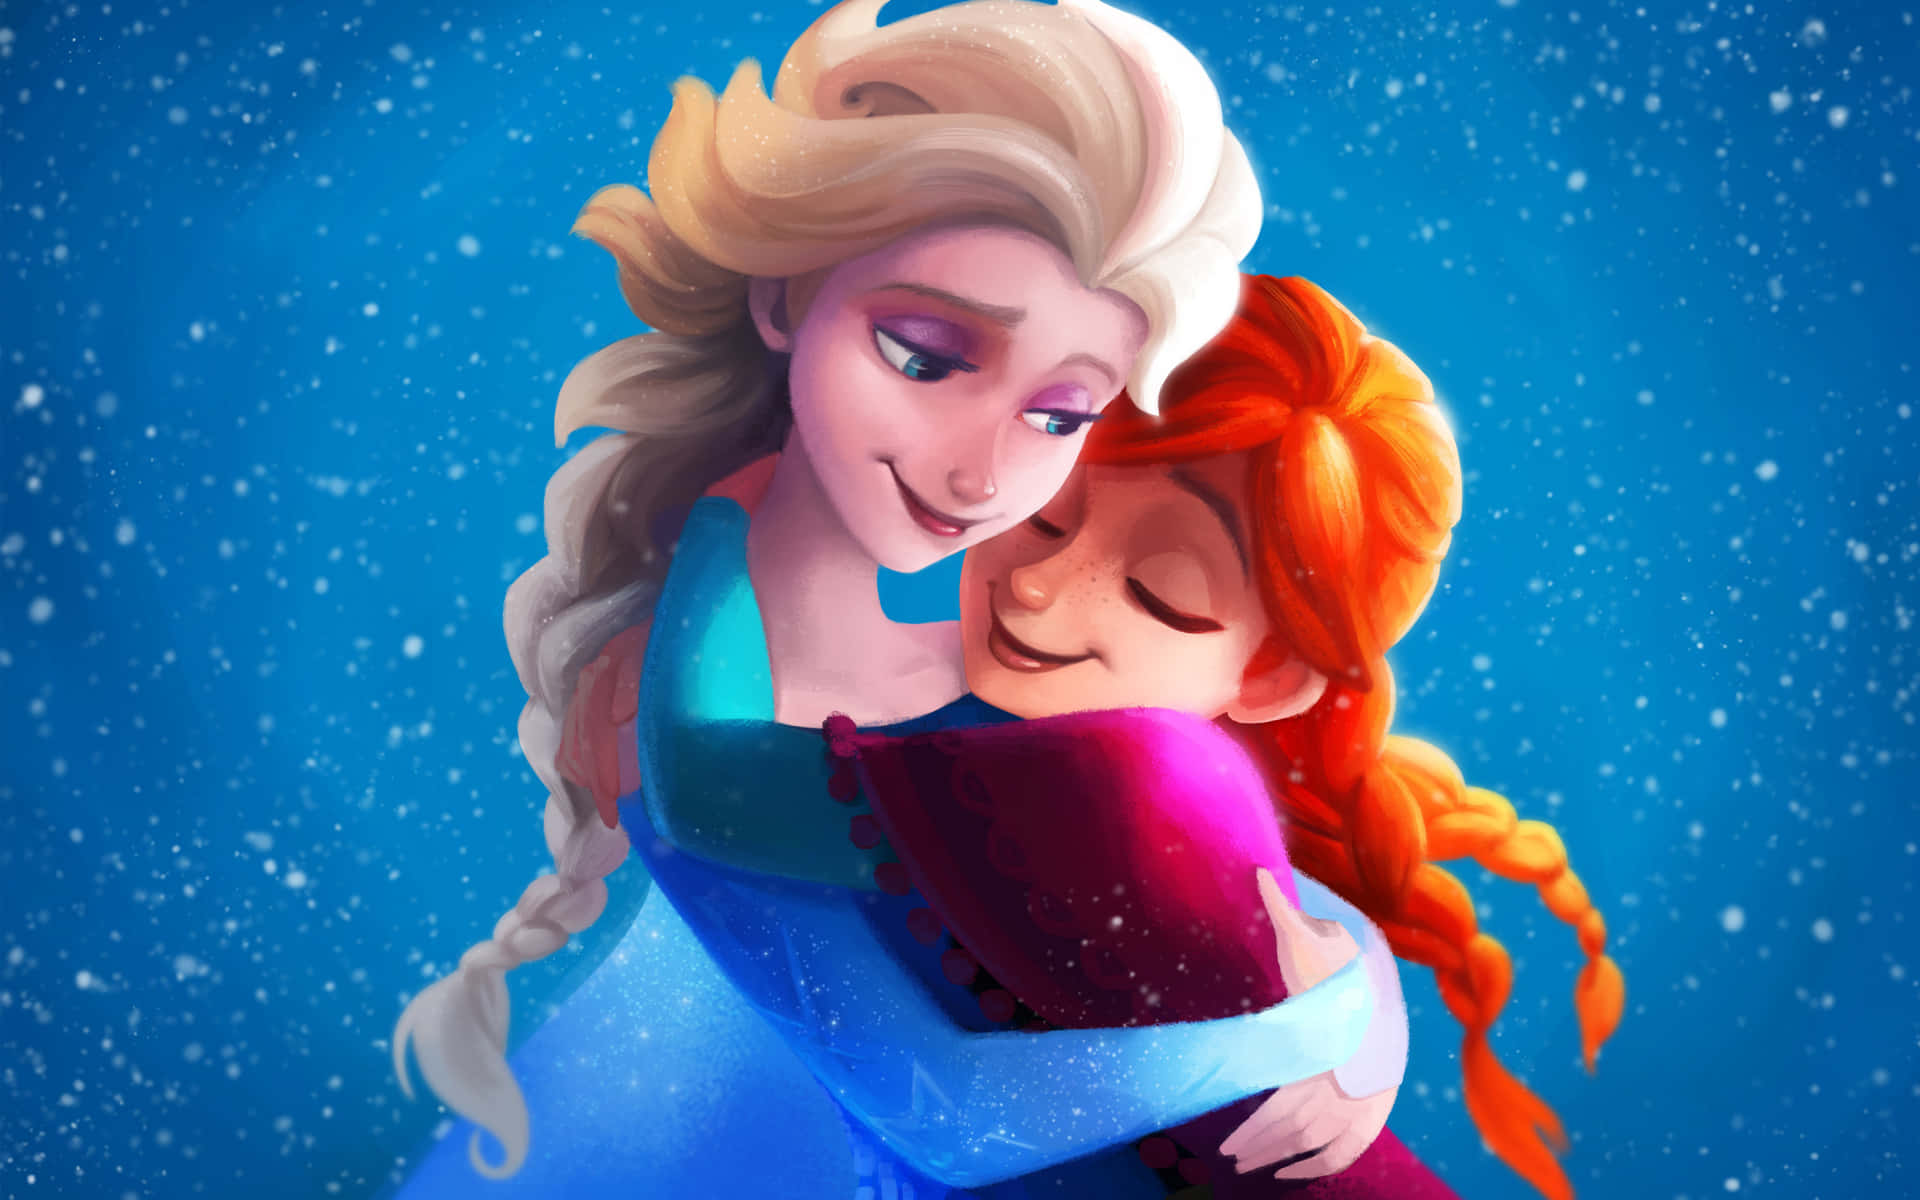 Frozen Sisters billeder dekorerer guldagtige baggrunde.